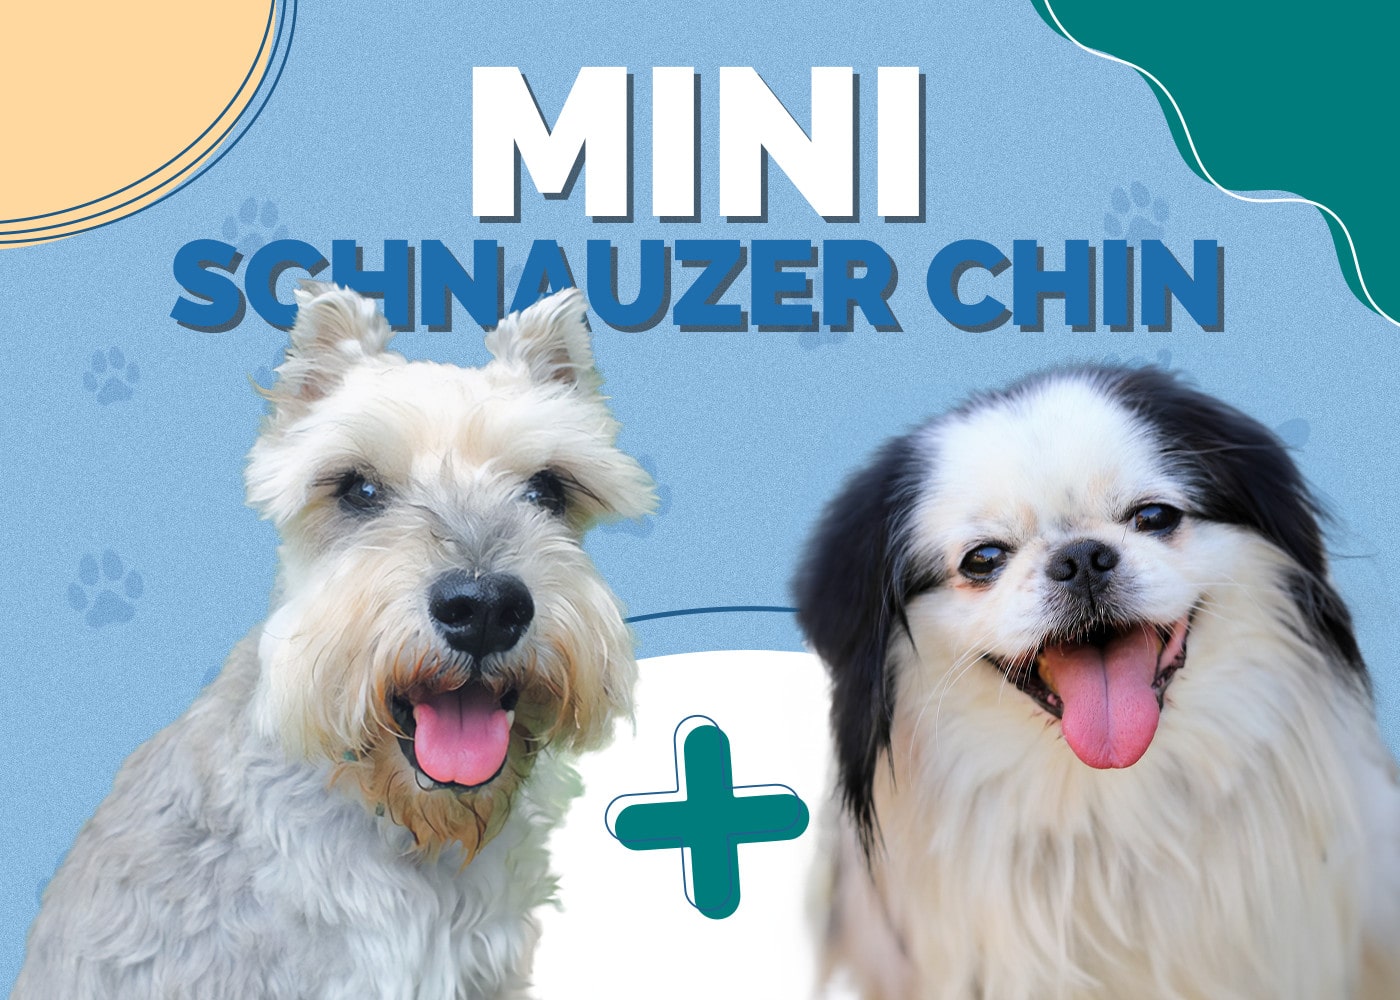 Mini Schnauzer Chin (Miniature Schnauzer & Japanese Chin Mix)